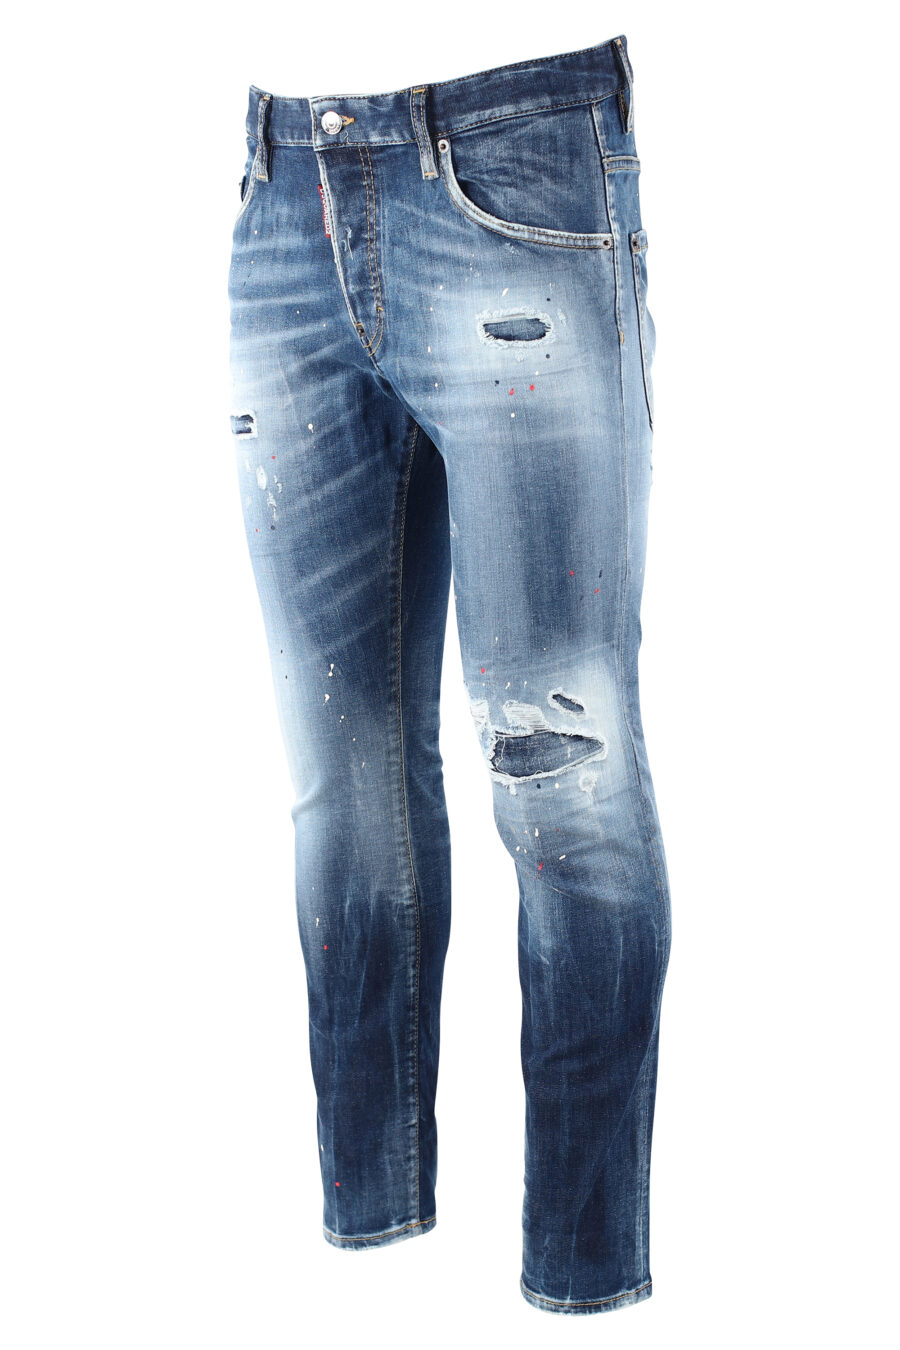 Pantalón vaquero "skater jean" azul desgastado con pintura blanca - IMG 9725